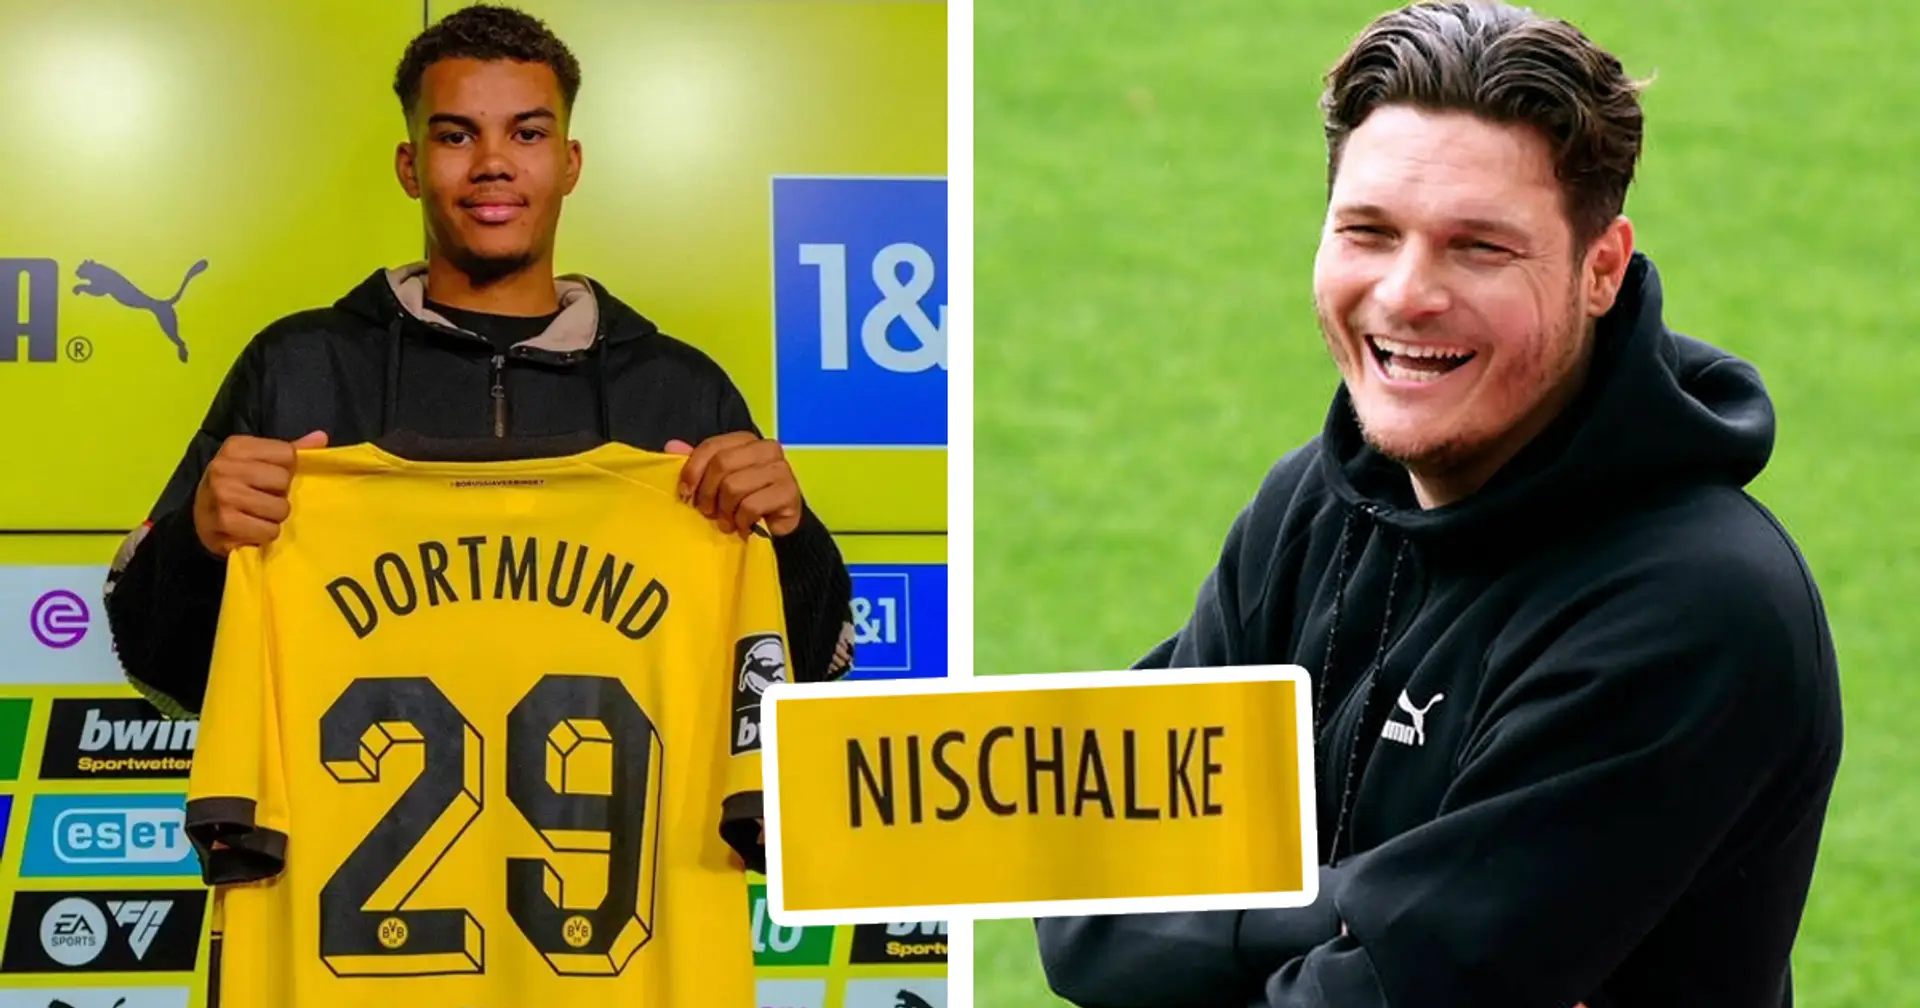 Nischalke (Nie Schalke!) wechselt zu Borussia Dortmund! Sein Name regt BVB-Fans auf